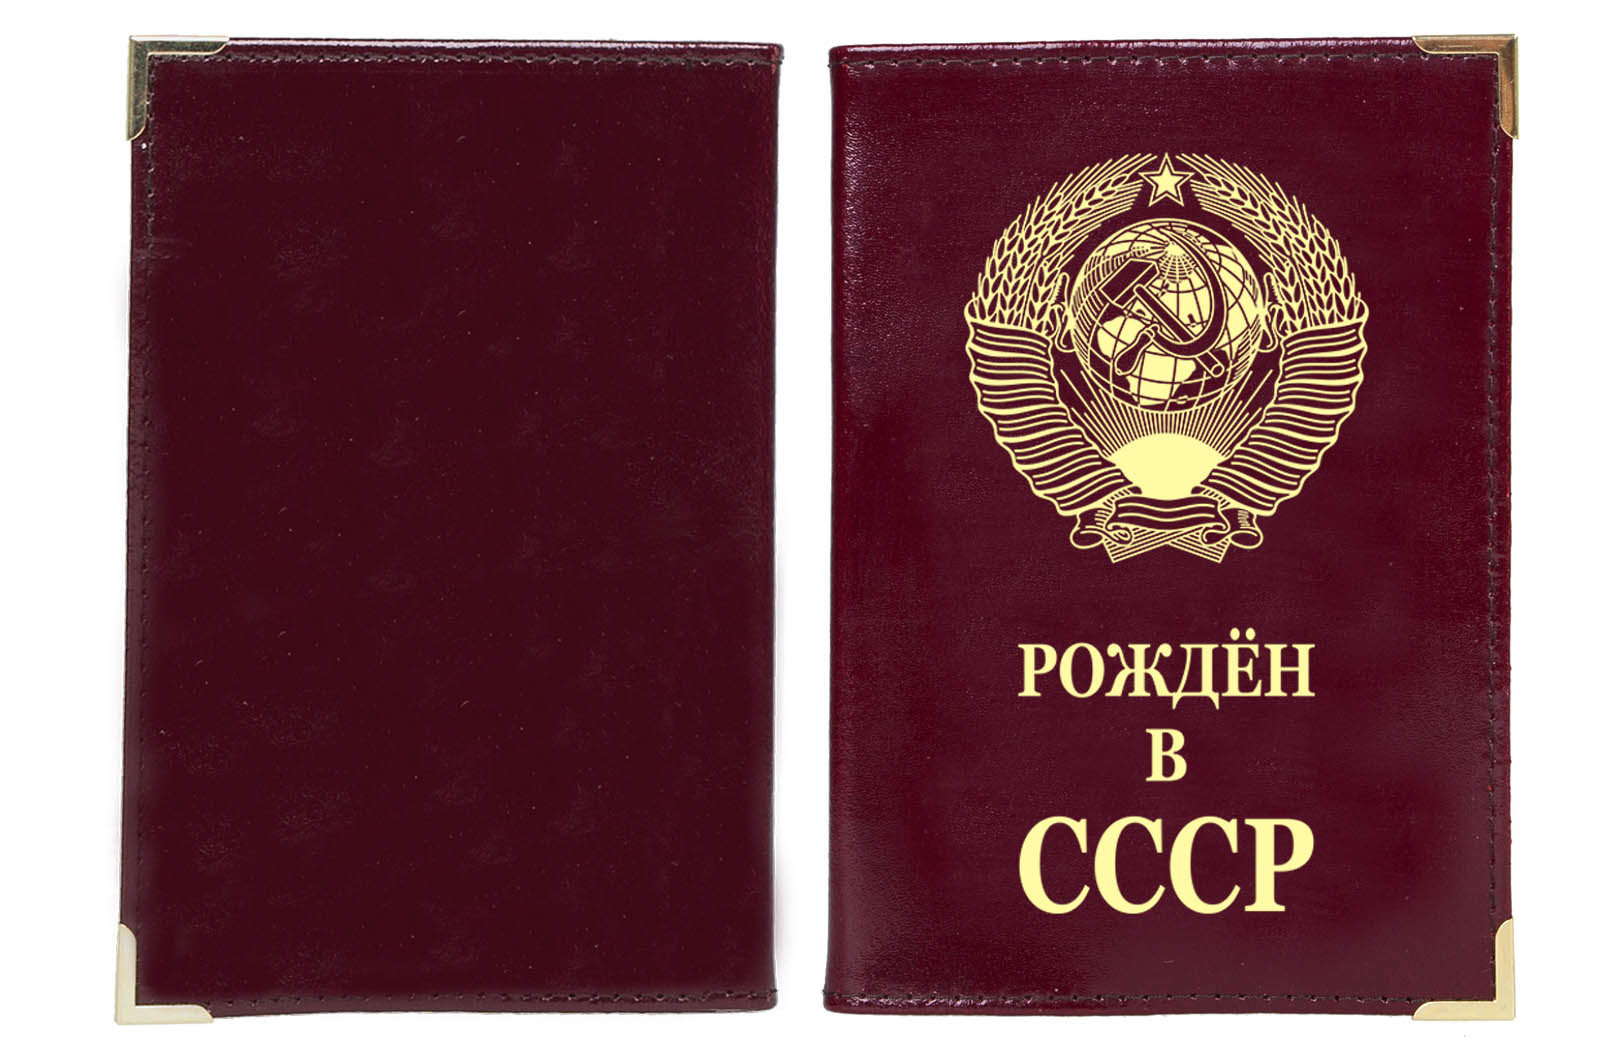 Недорого купить обложку на паспорт "Рожден в СССР"